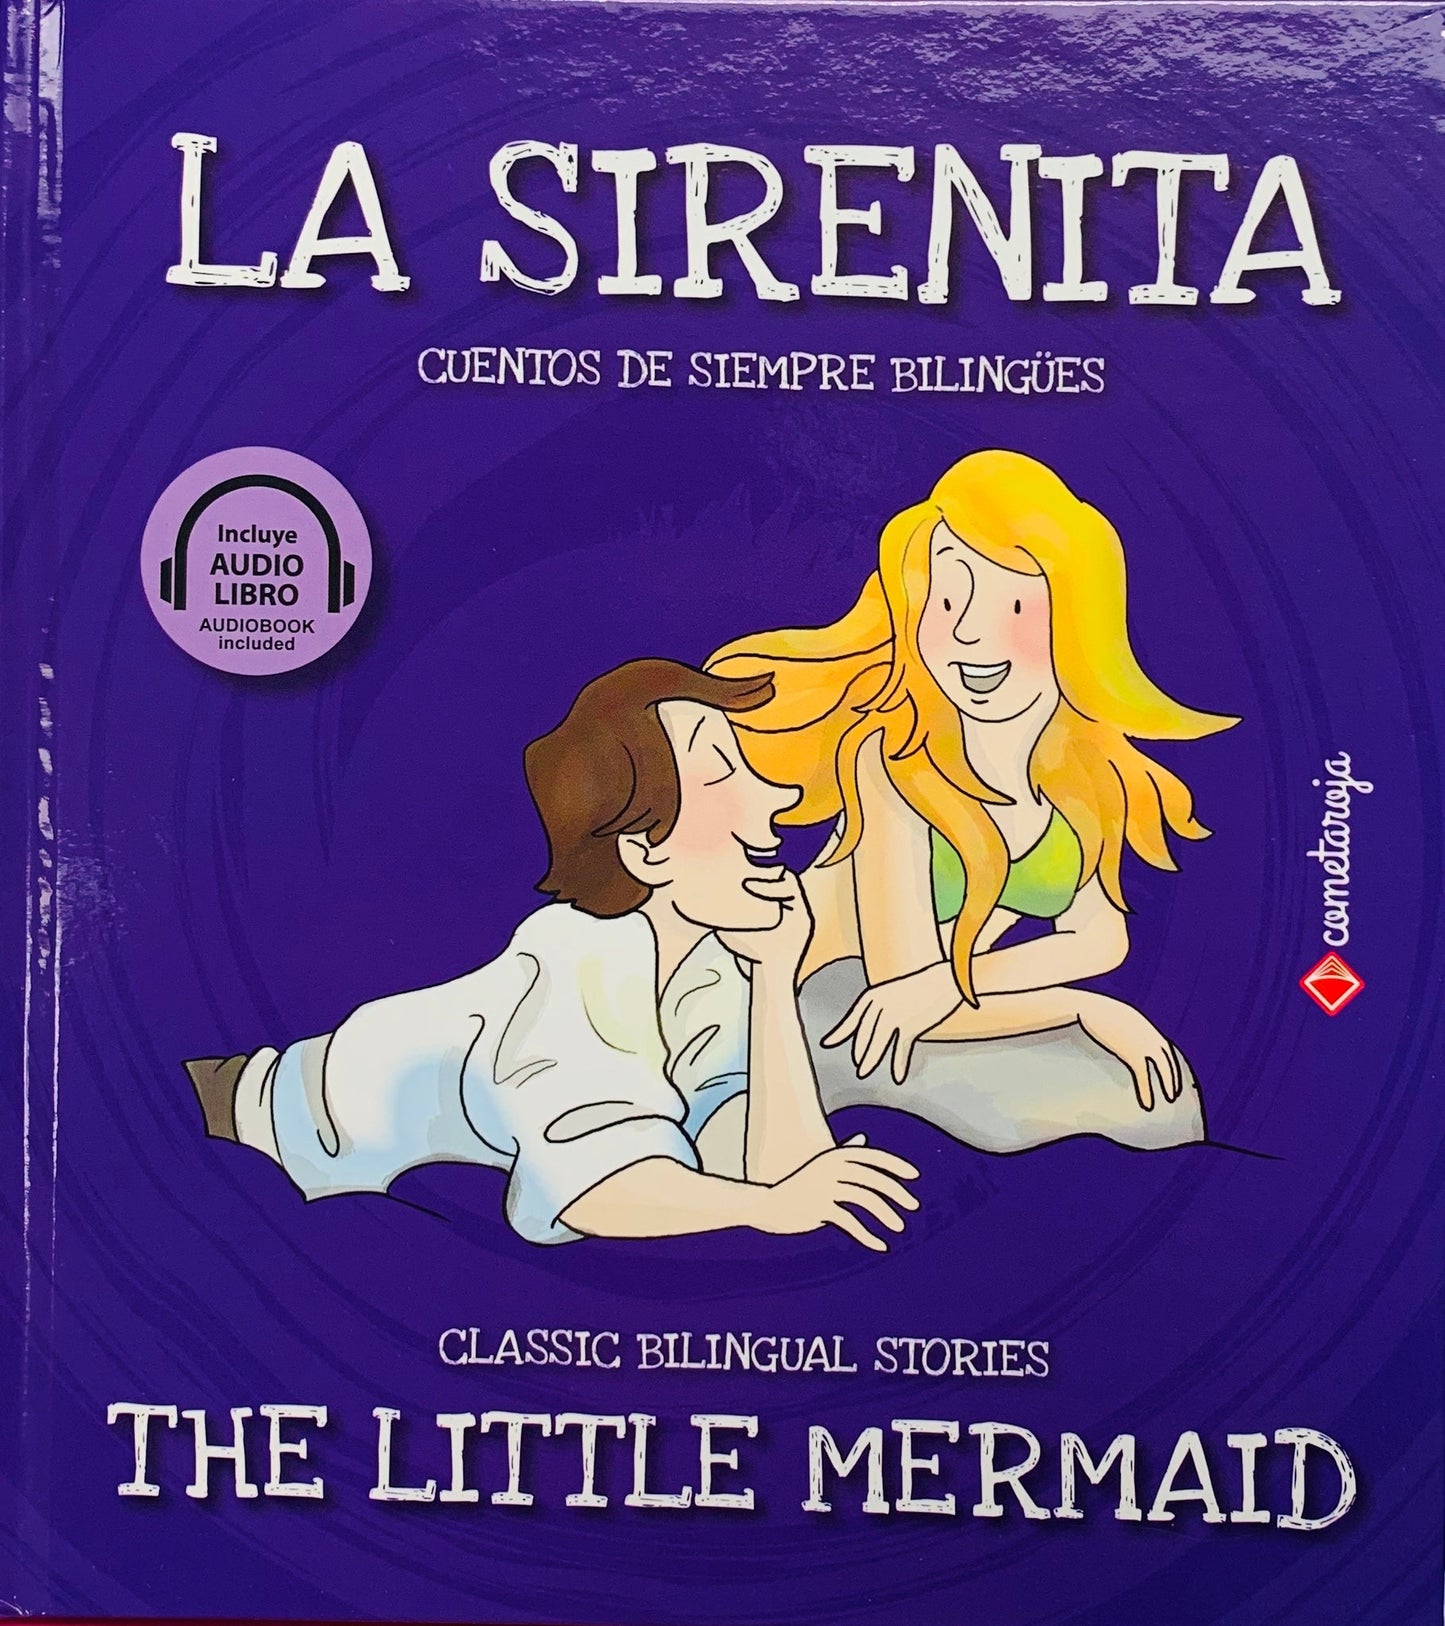 La Sirenita / The Little Mermaid (Cuentos de siempre bilingües)